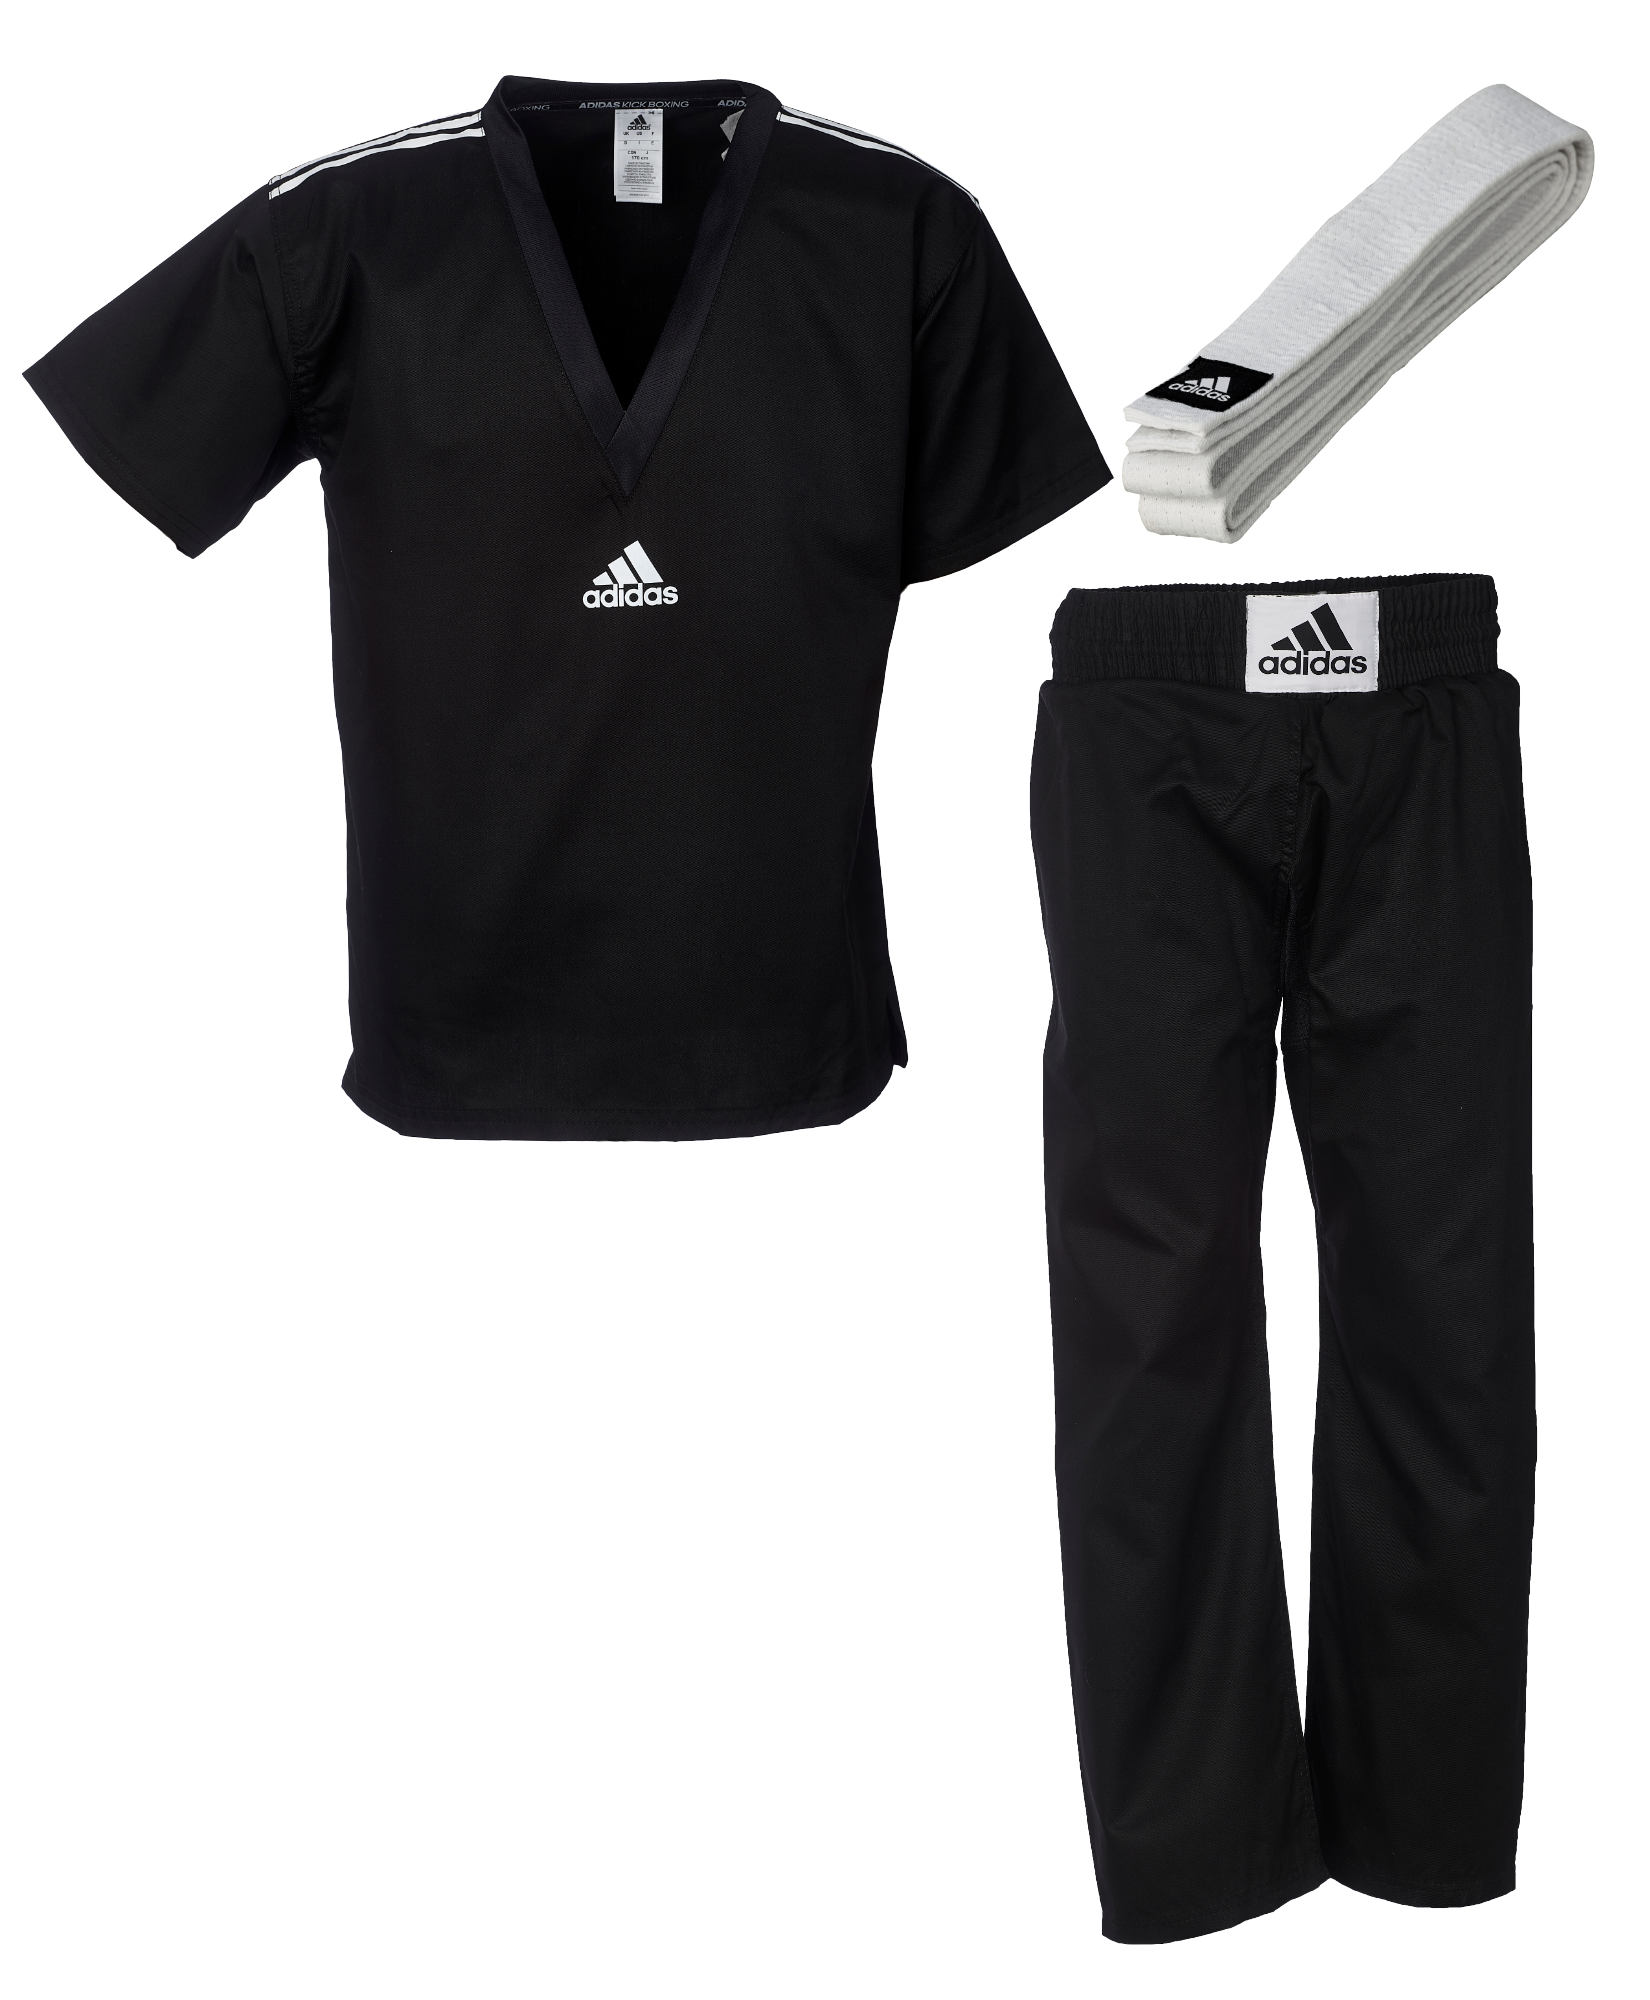 adidas Kickbox-Uniform "Club" schwarz, adiKBUN20